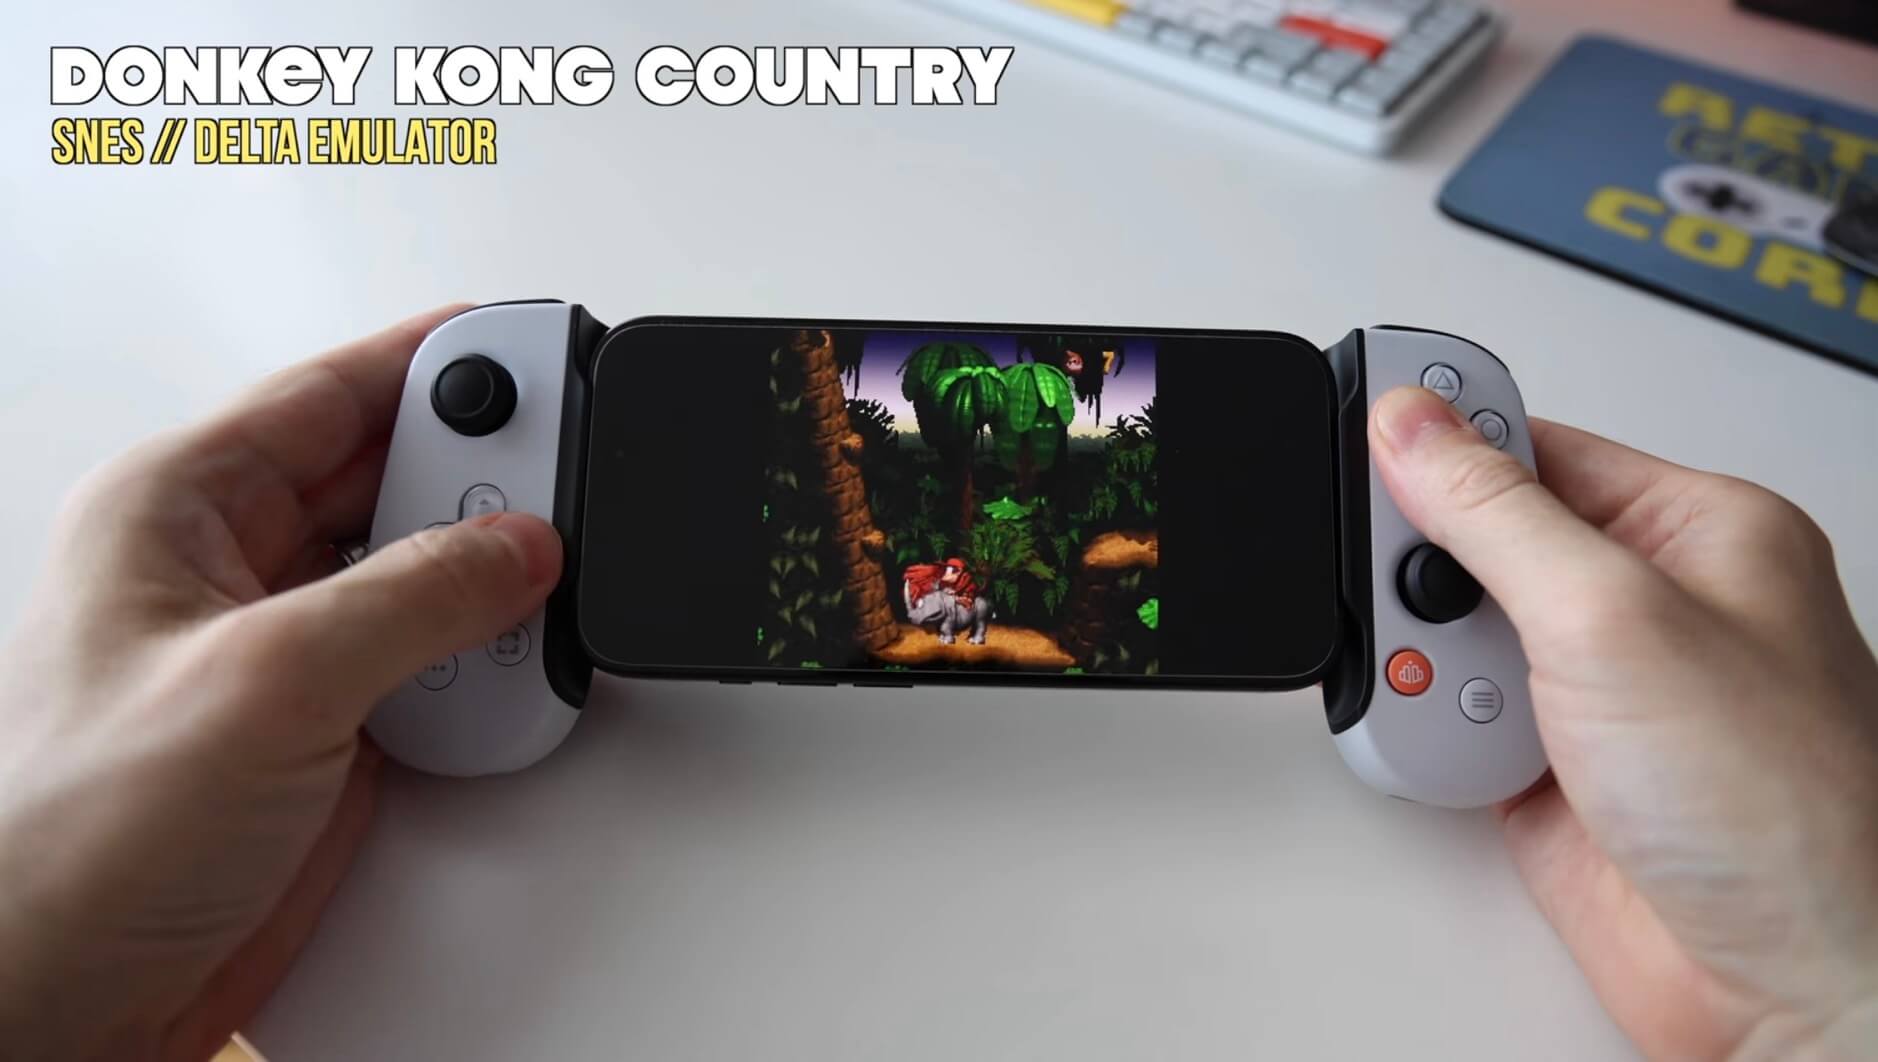 Das Bild zeigt zwei Hände, die ein Smartphone halten, auf dem das Spiel "Donkey Kong Country" über einen SNES-Emulator namens Delta gespielt wird. Die Hände bedienen auch einen an das Telefon angeschlossenen Gamecontroller.